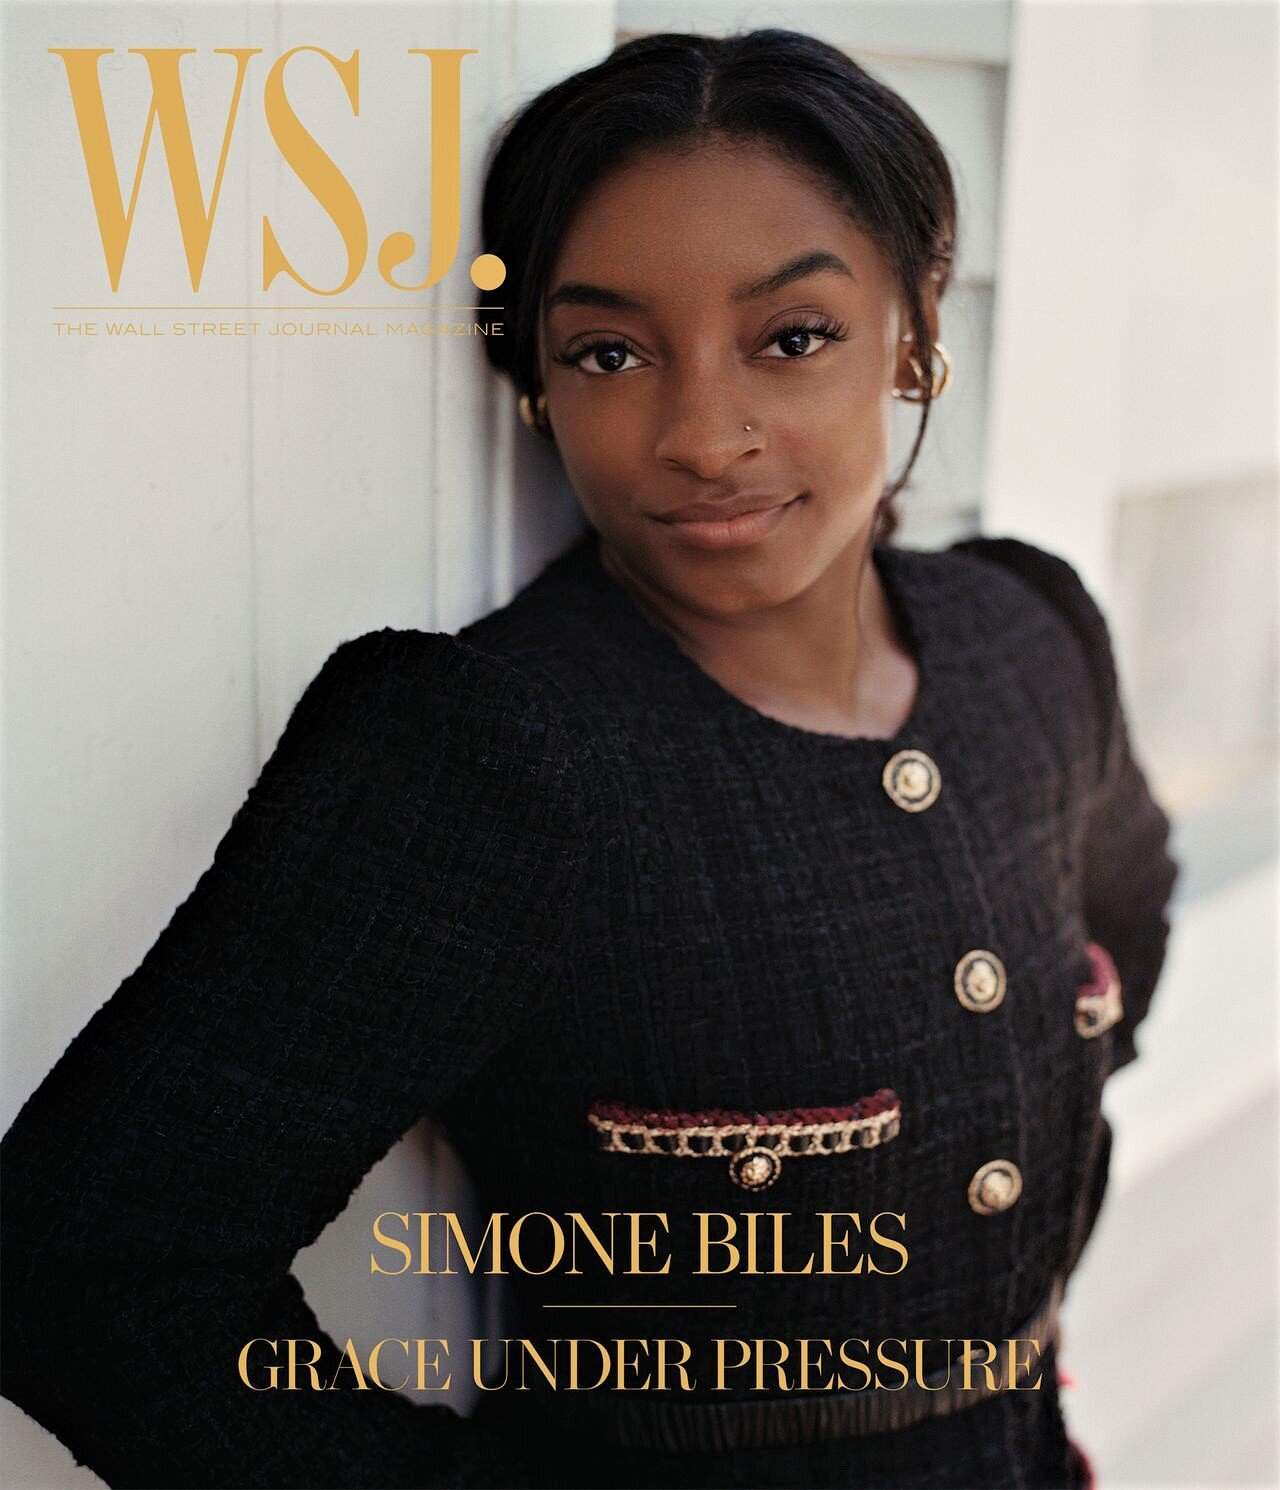 Simone-Biles-Rahim-Fortune-WSJ-August-2021 (6).jpg